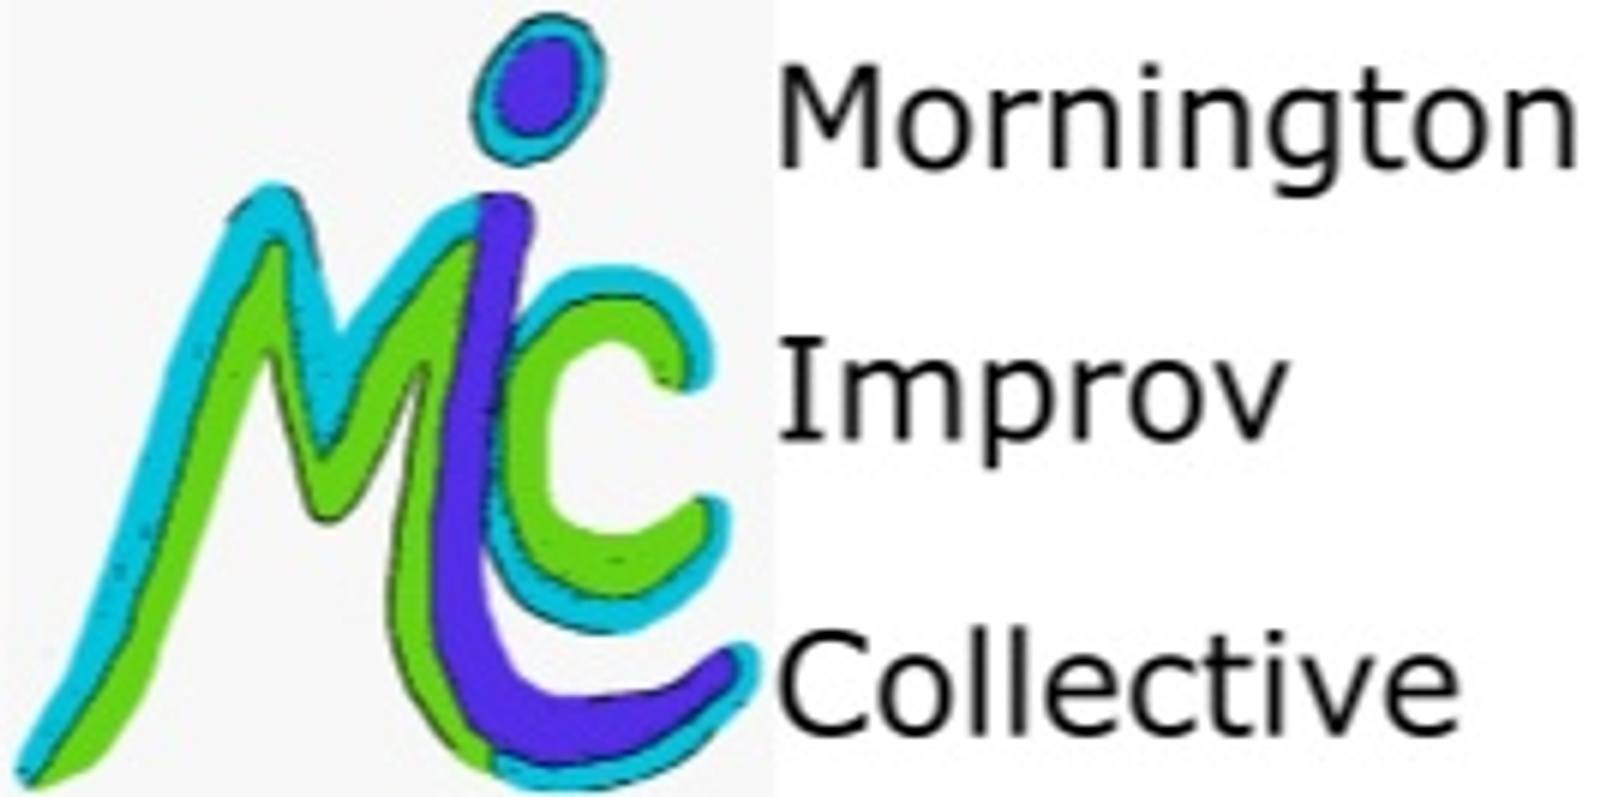 Mornington Improv Collective's banner